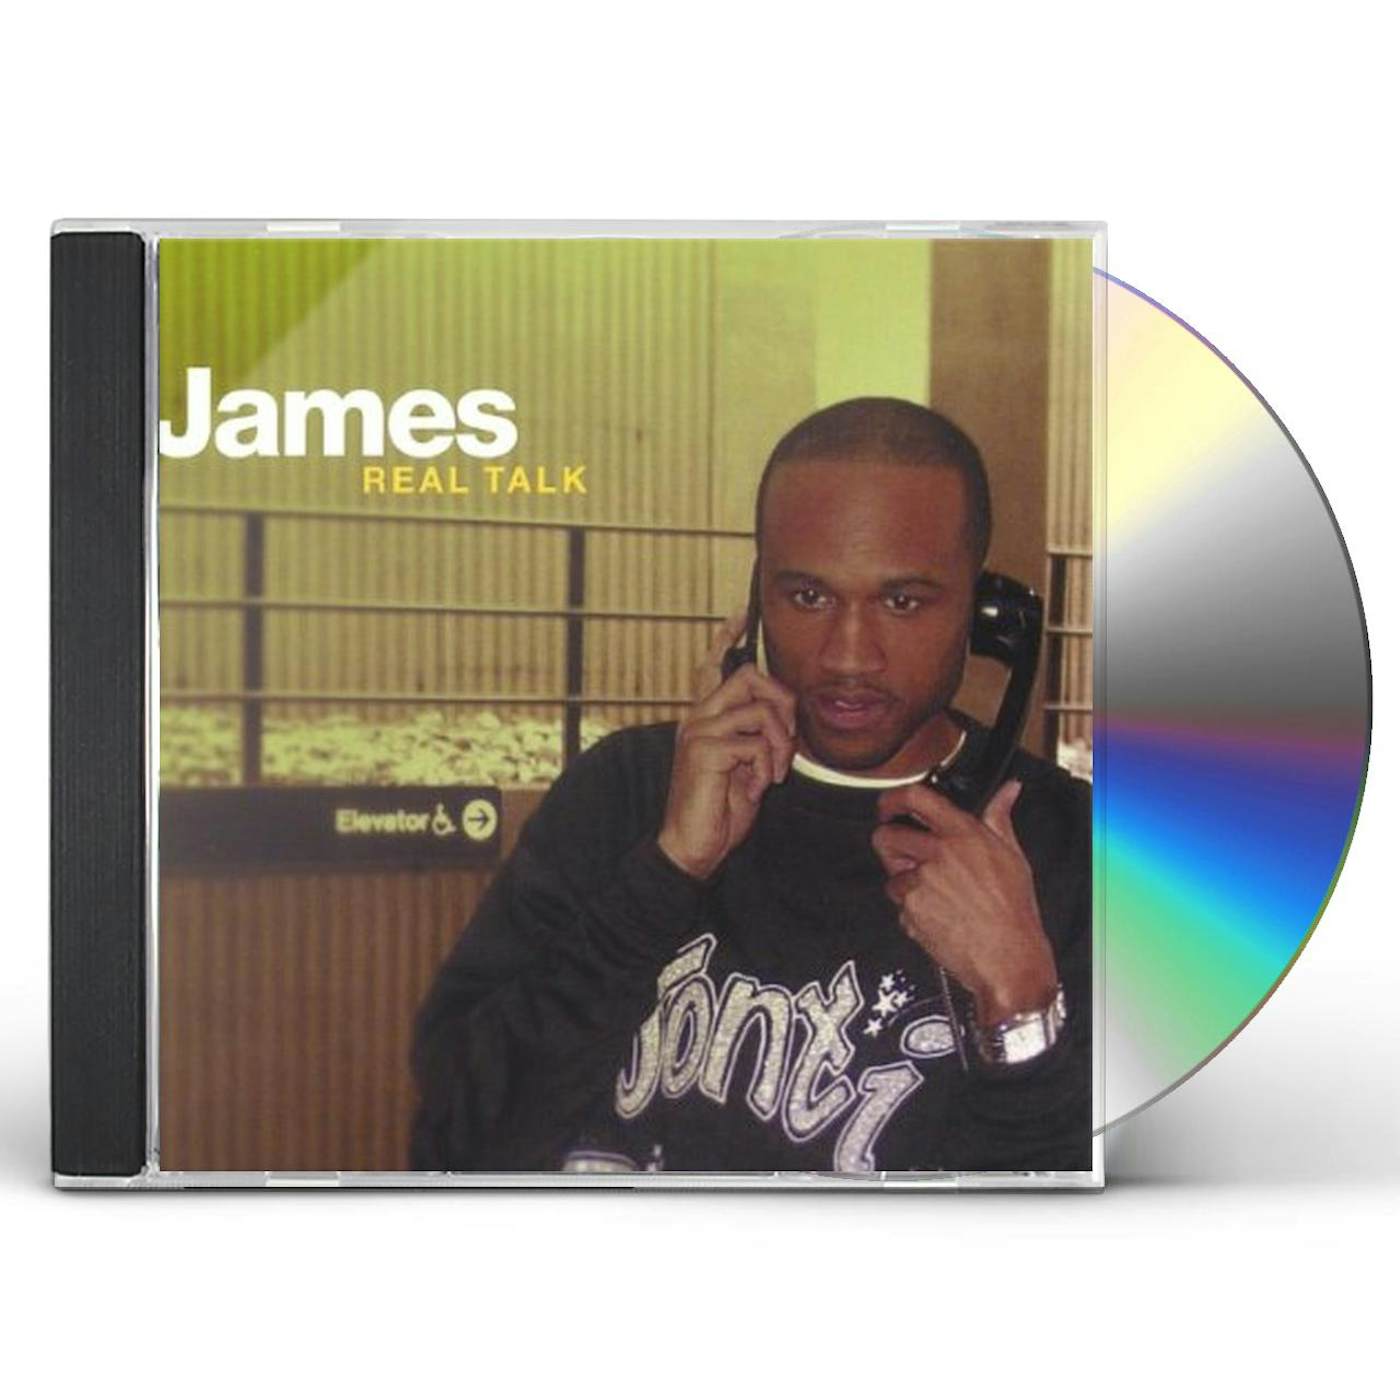 James REAL TALK CD